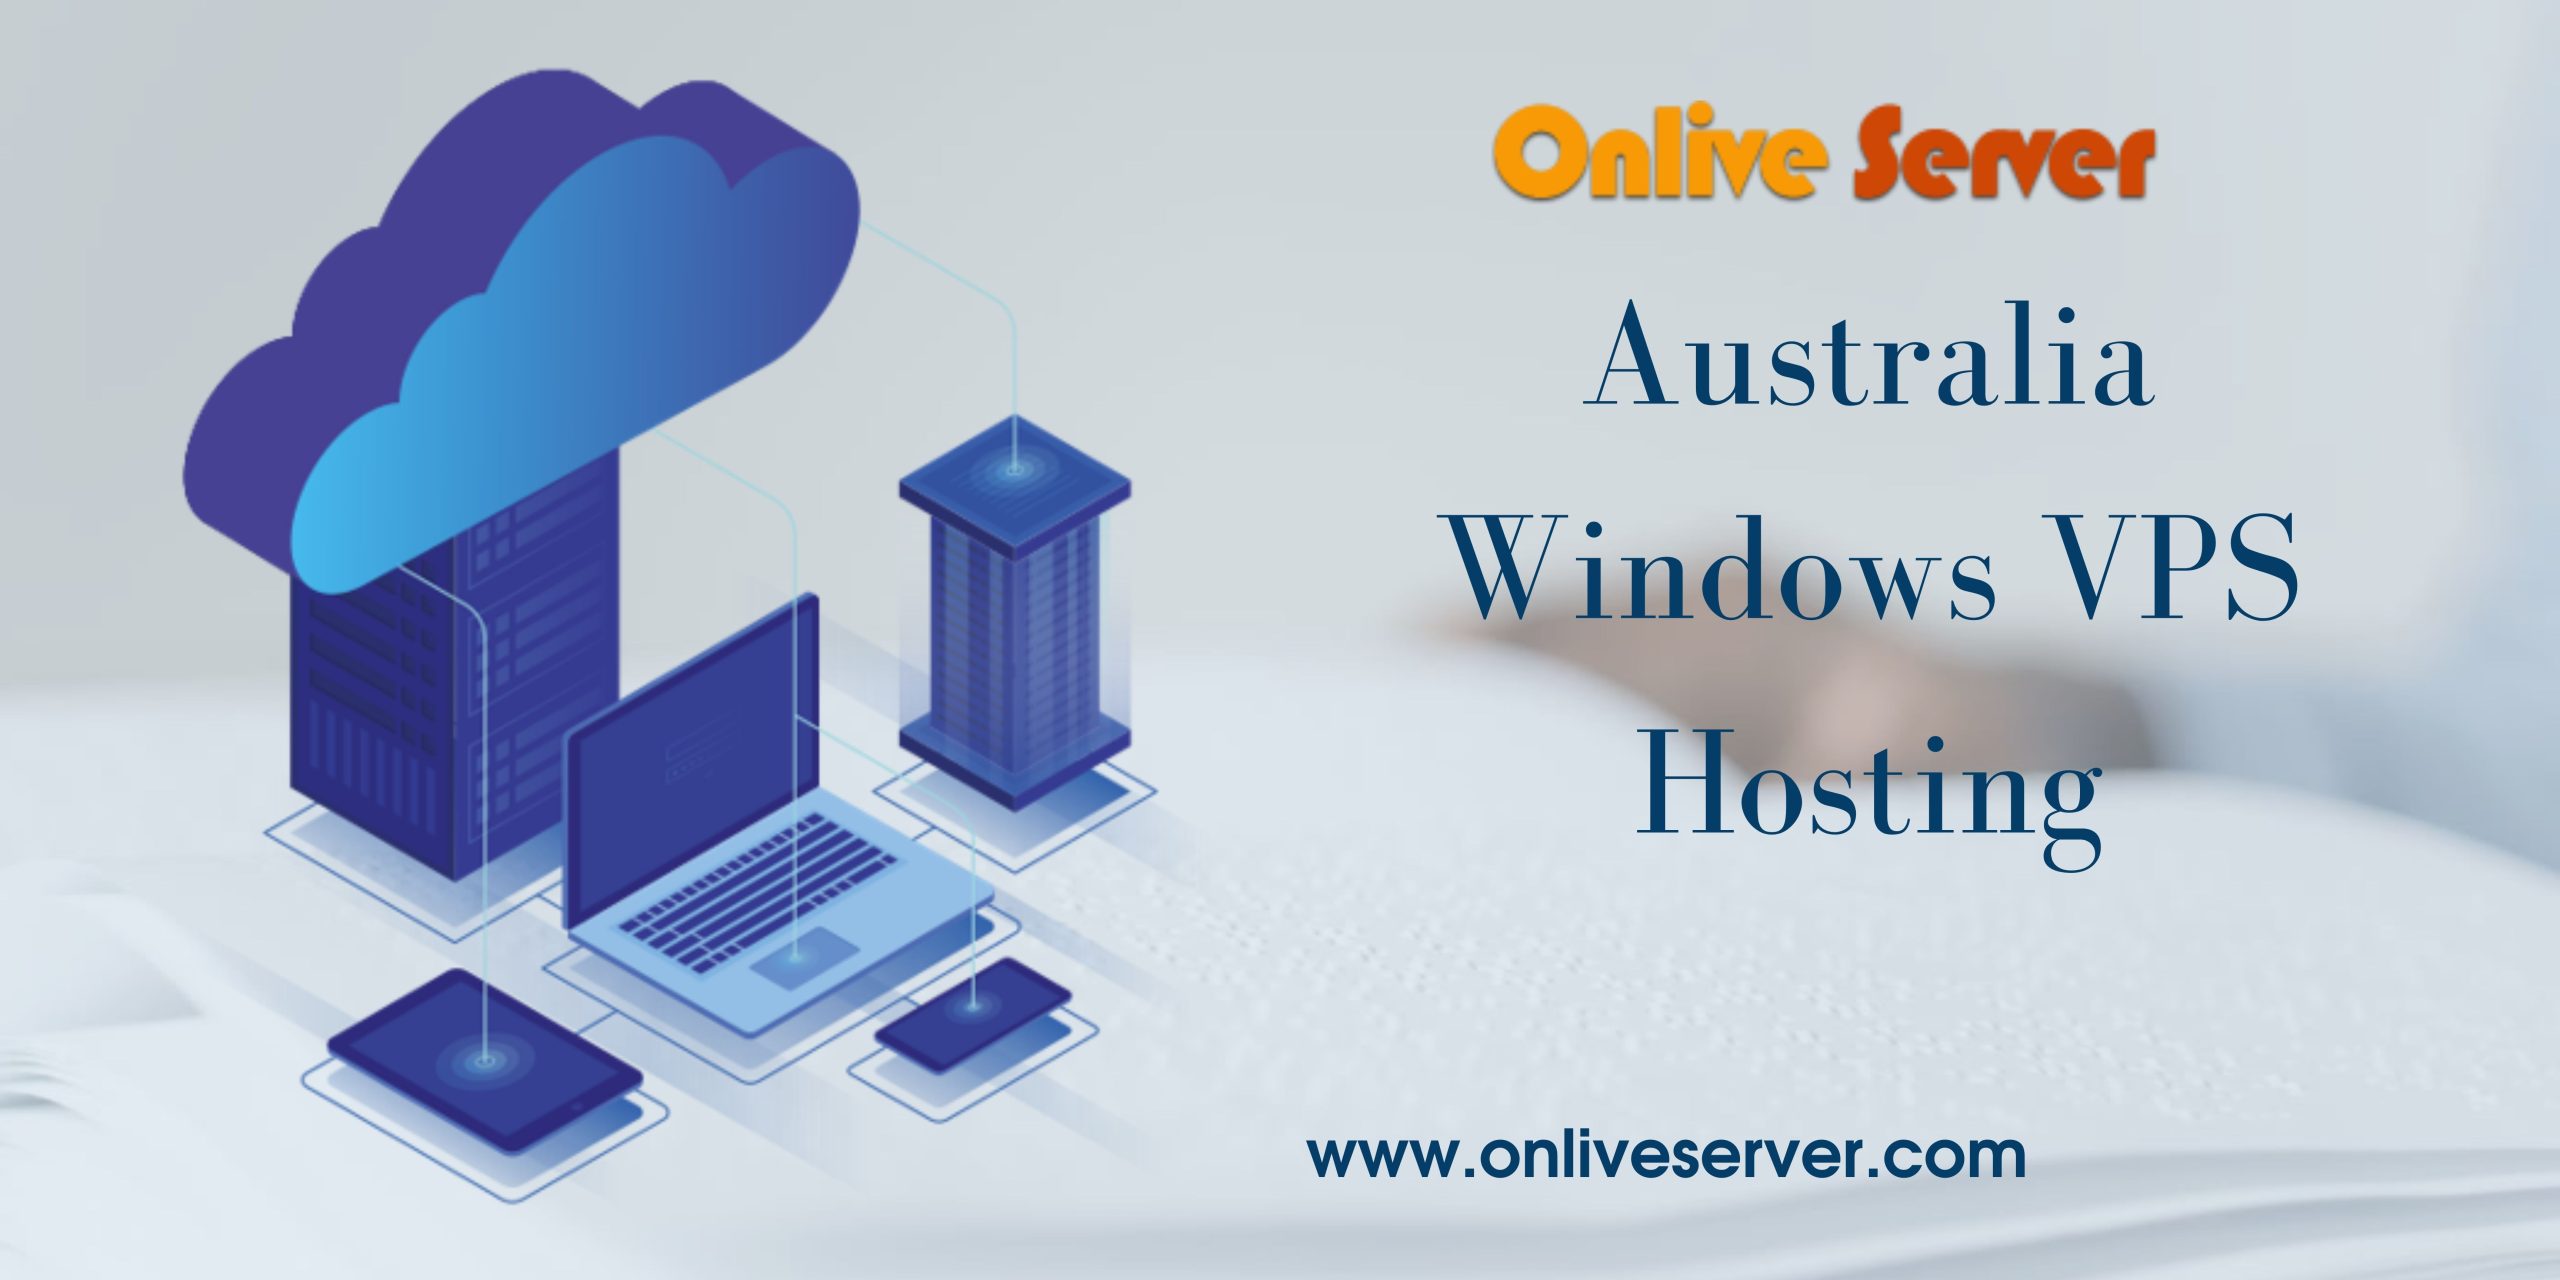 Australia Windows VPS Hosting